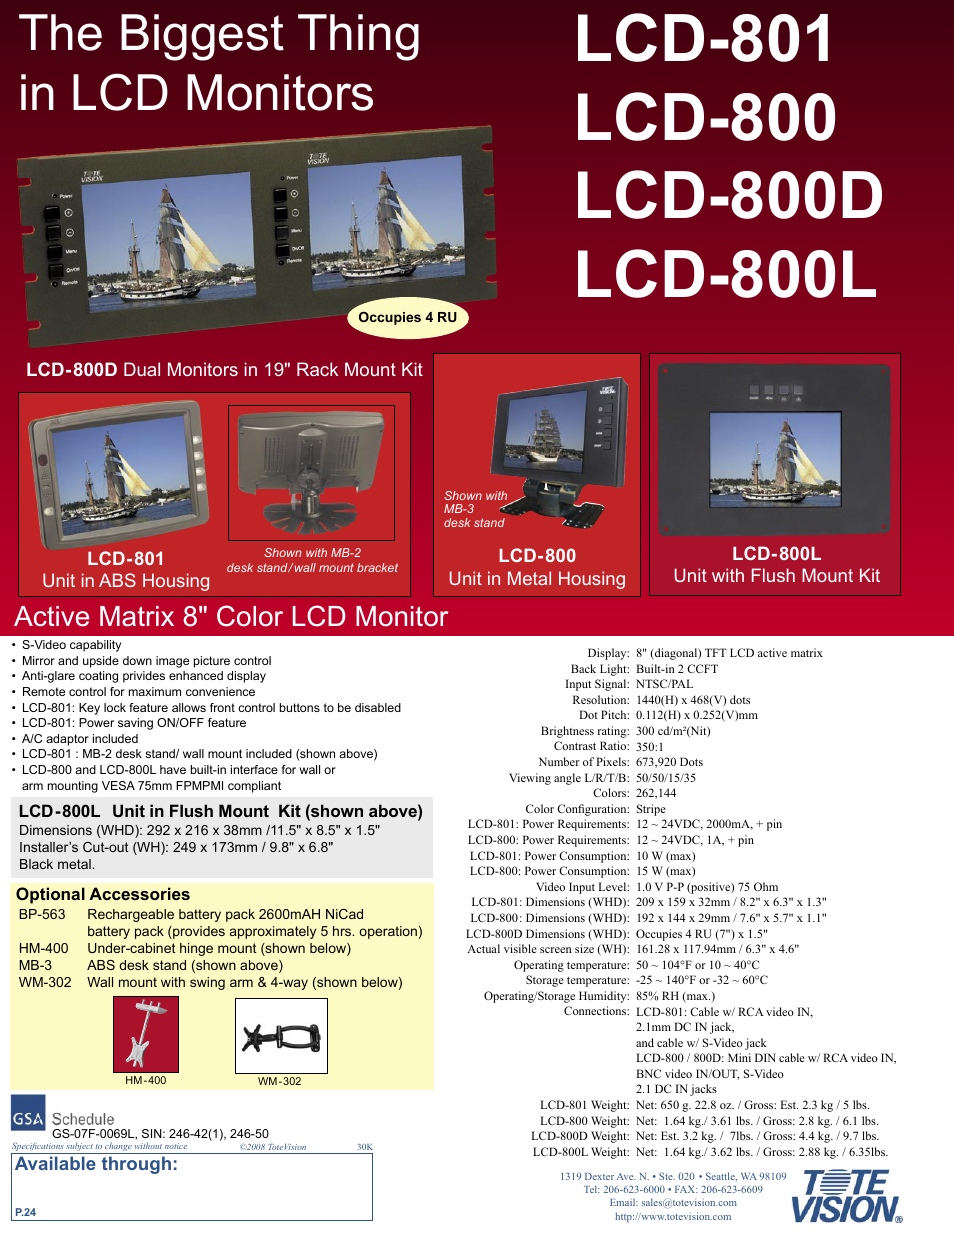 LCD-800L